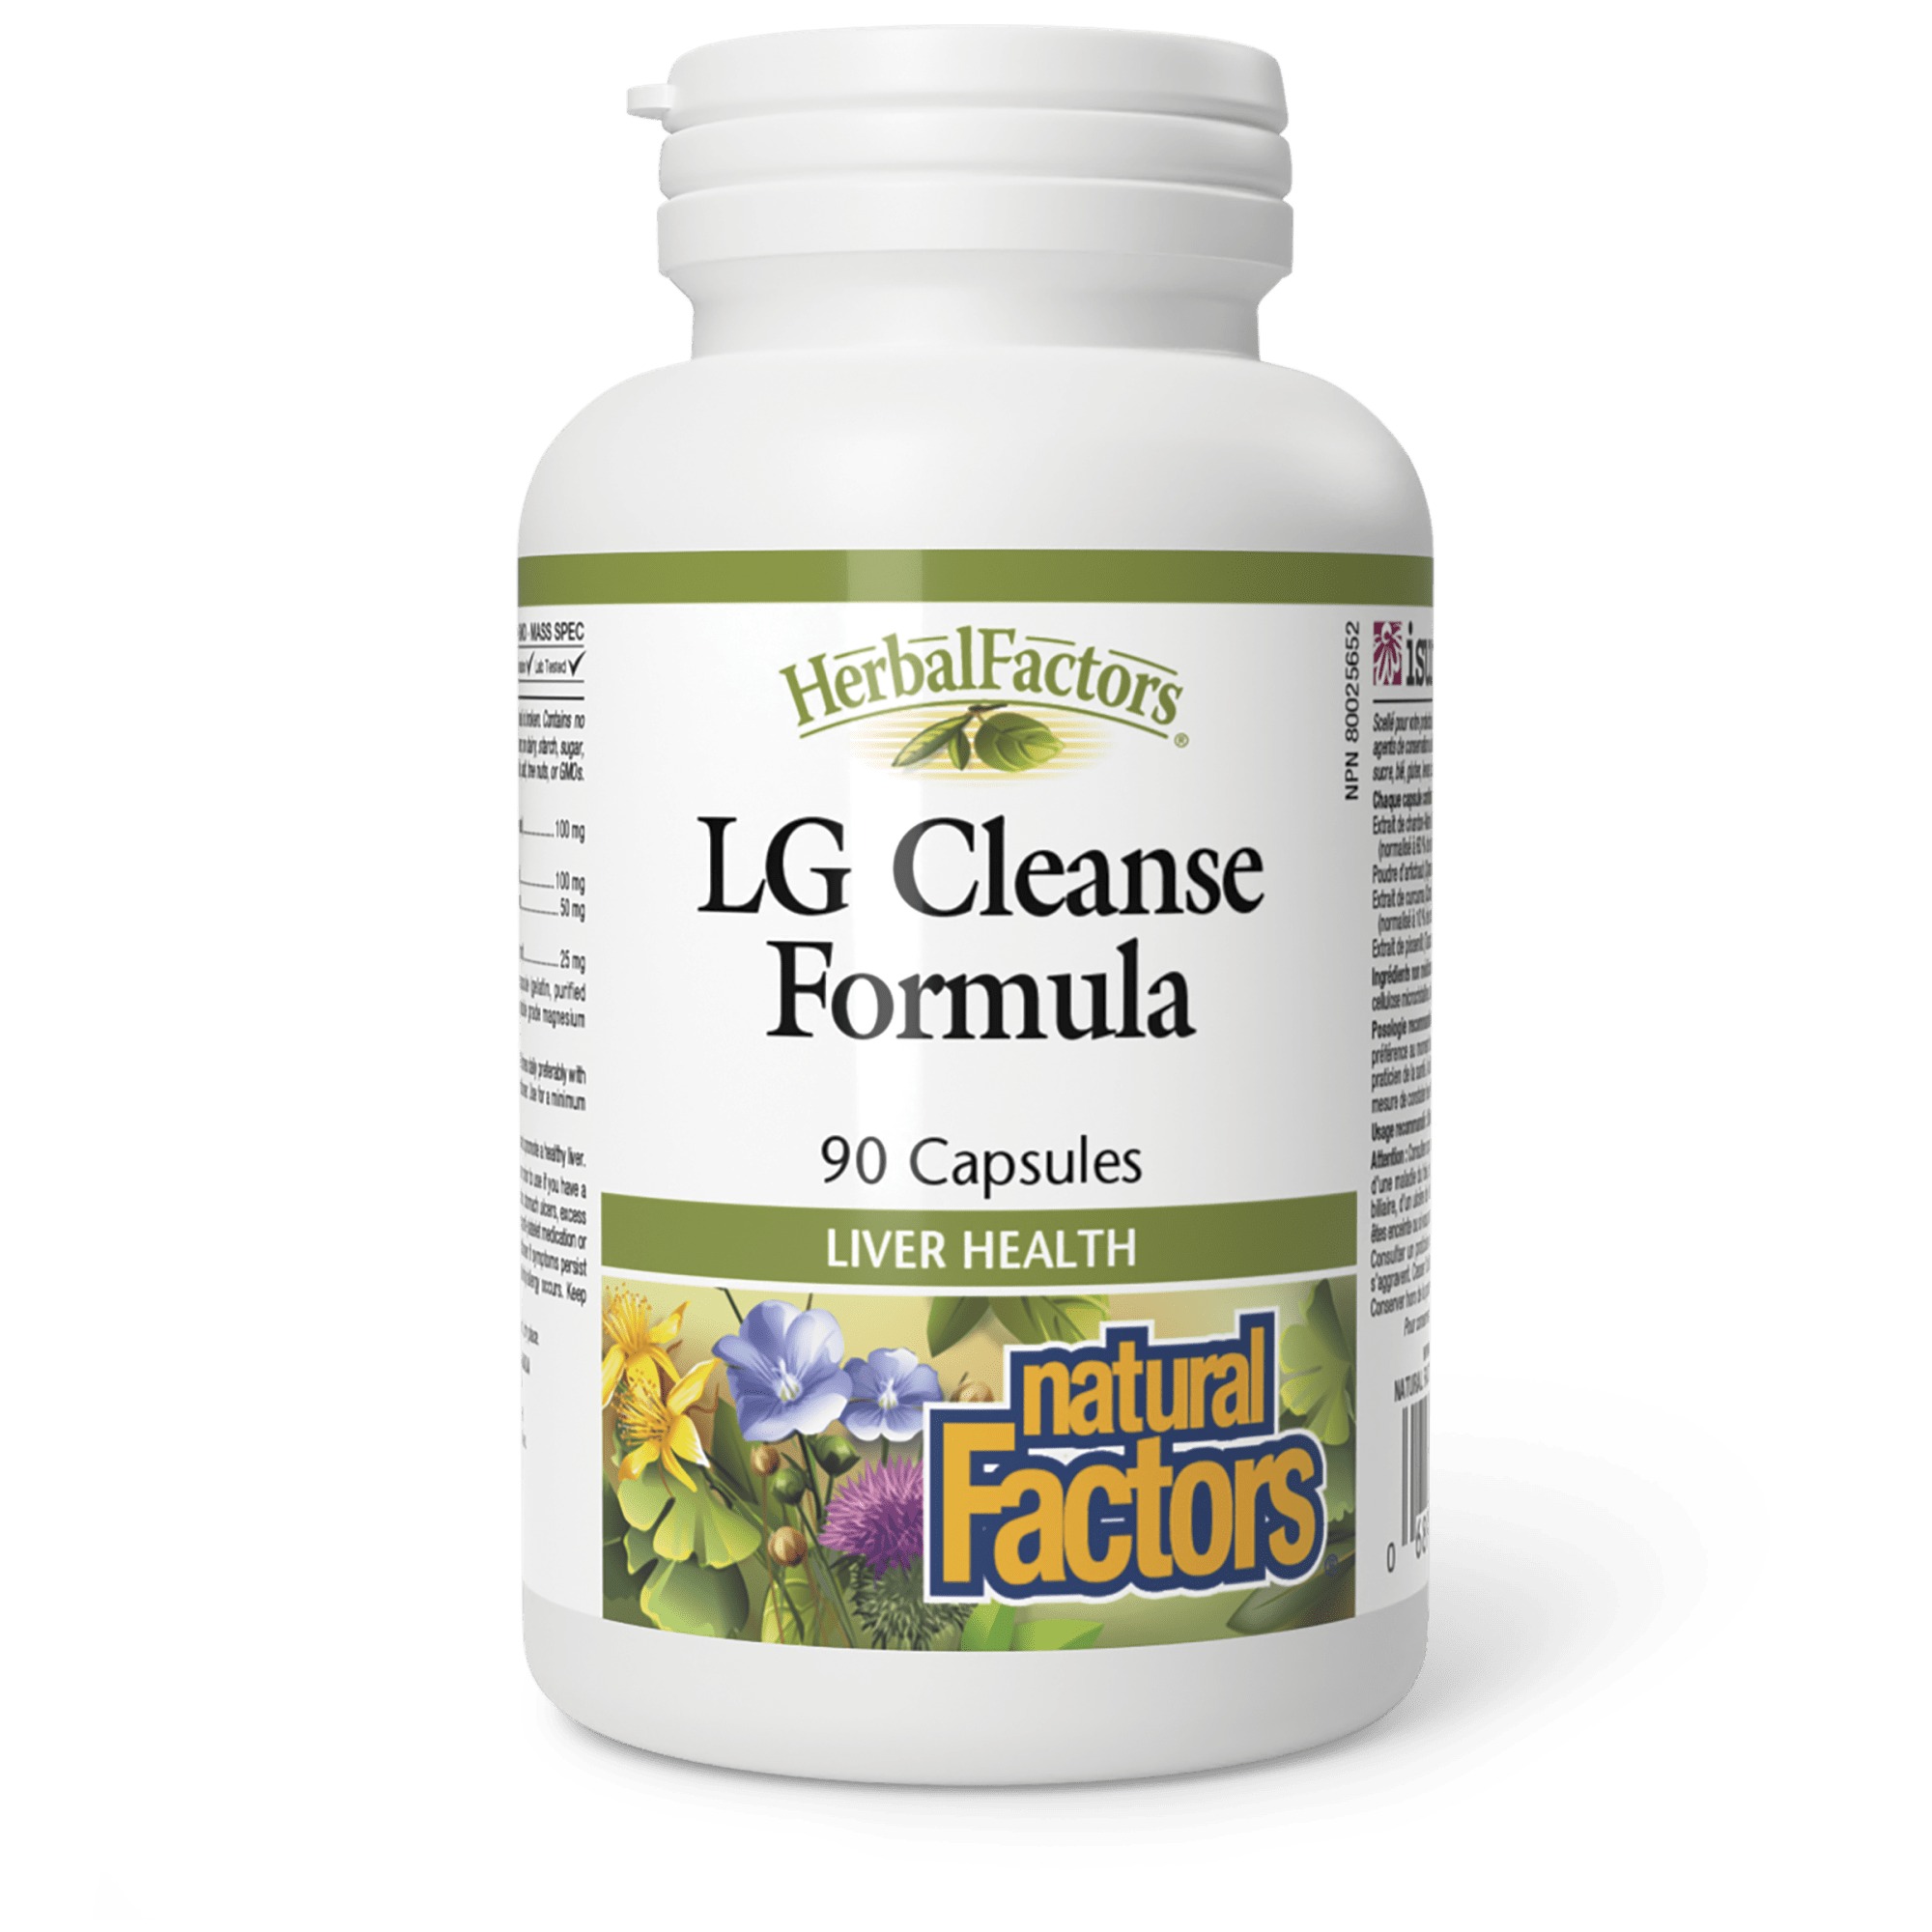 Natural Factors Herbal Factors LG Cleanse Formula 90 Vegetarian Capsules